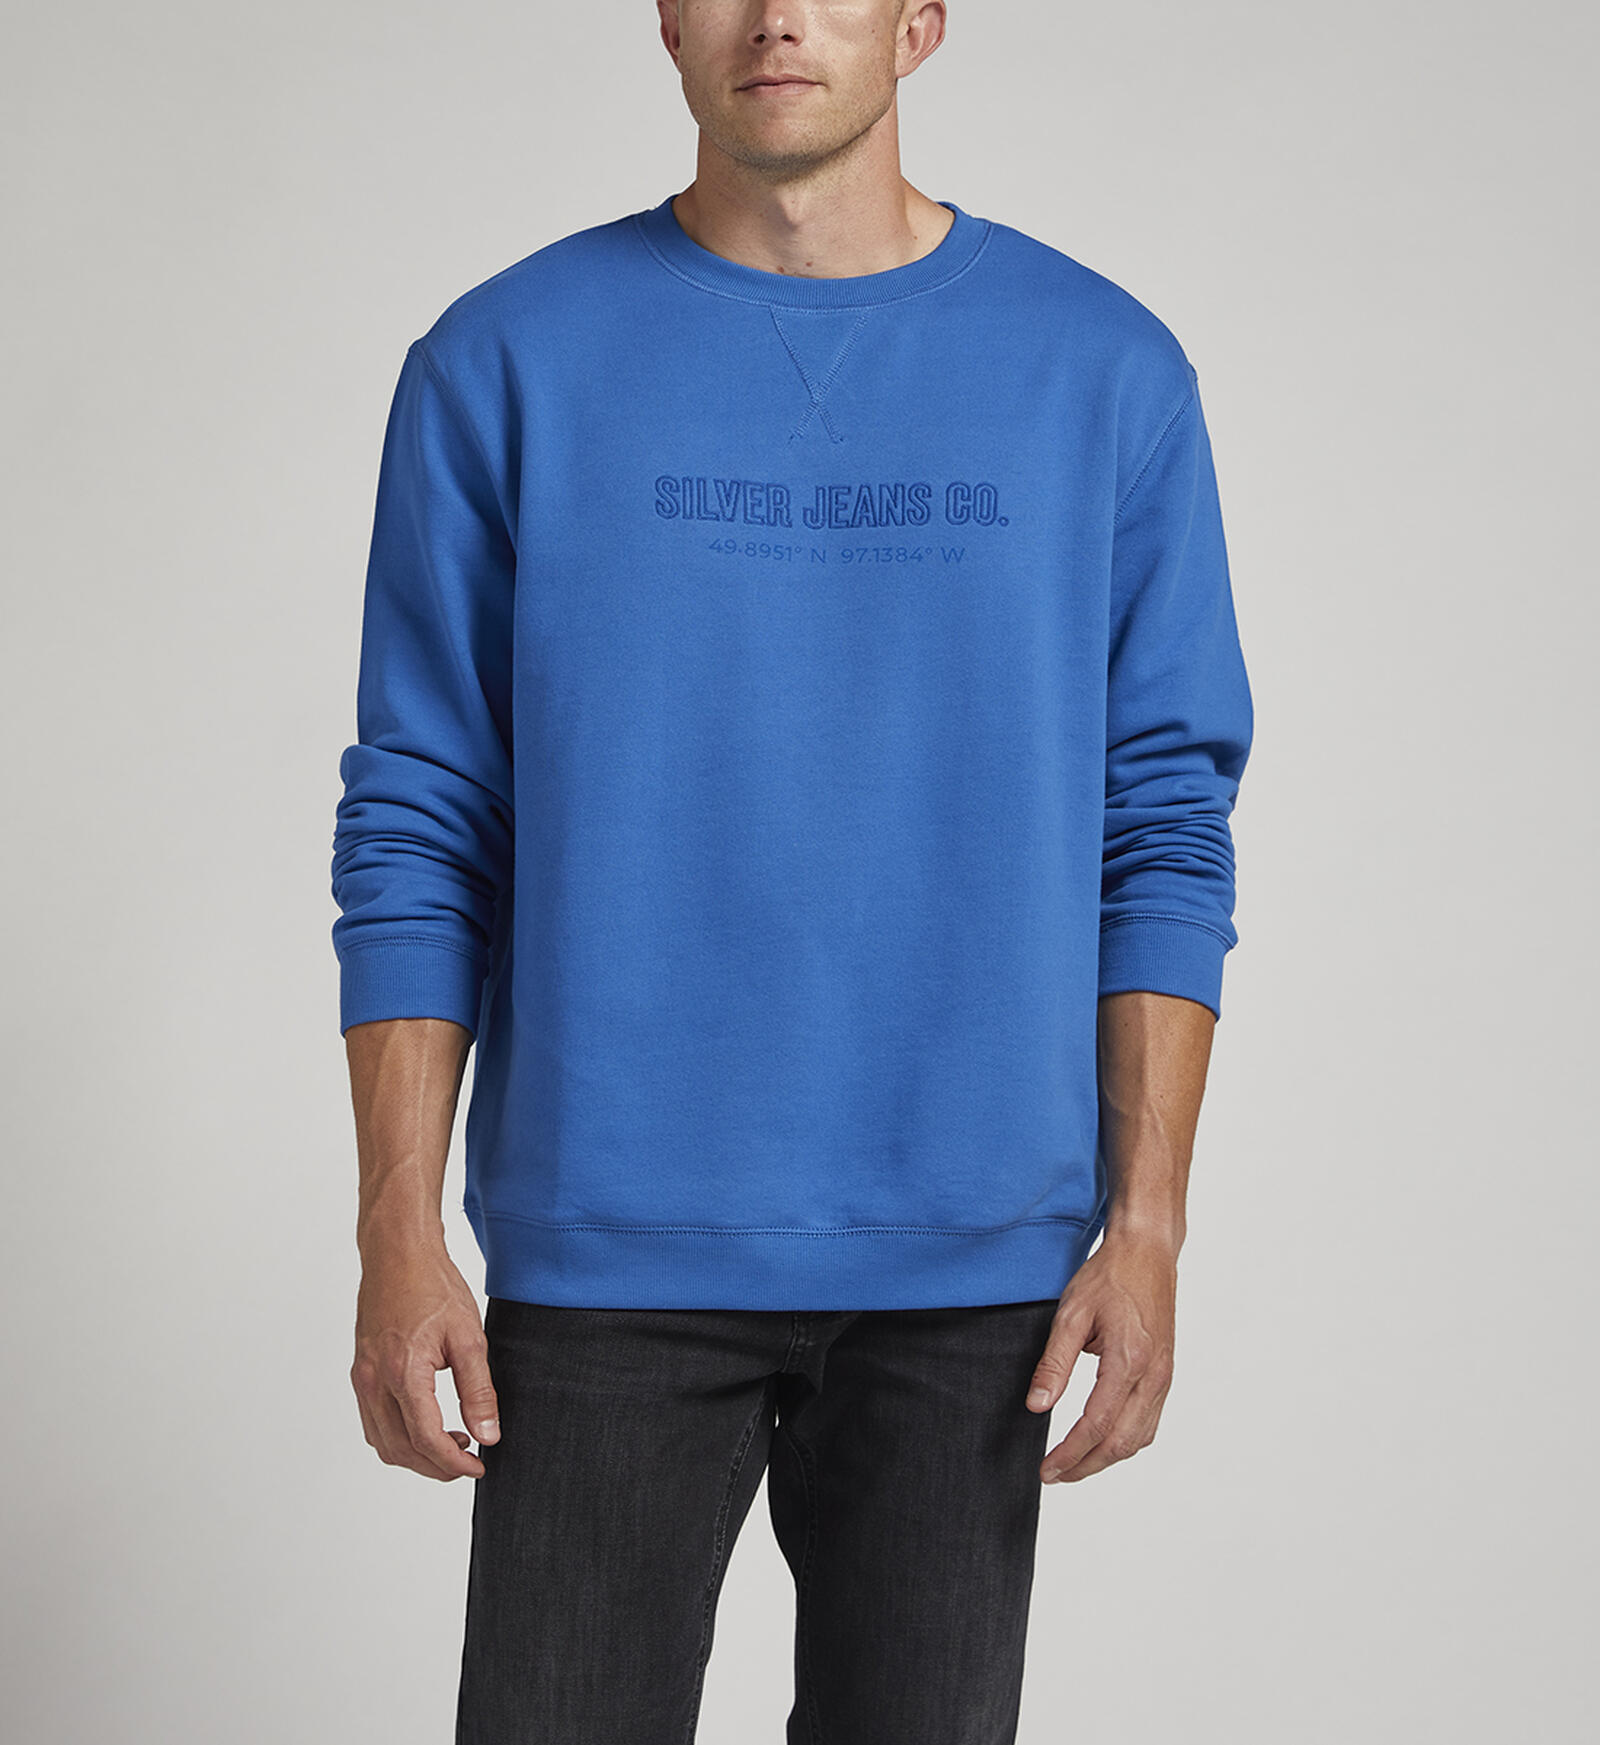 Buy Mens Crewneck Sweatshirt for CAD 68.00